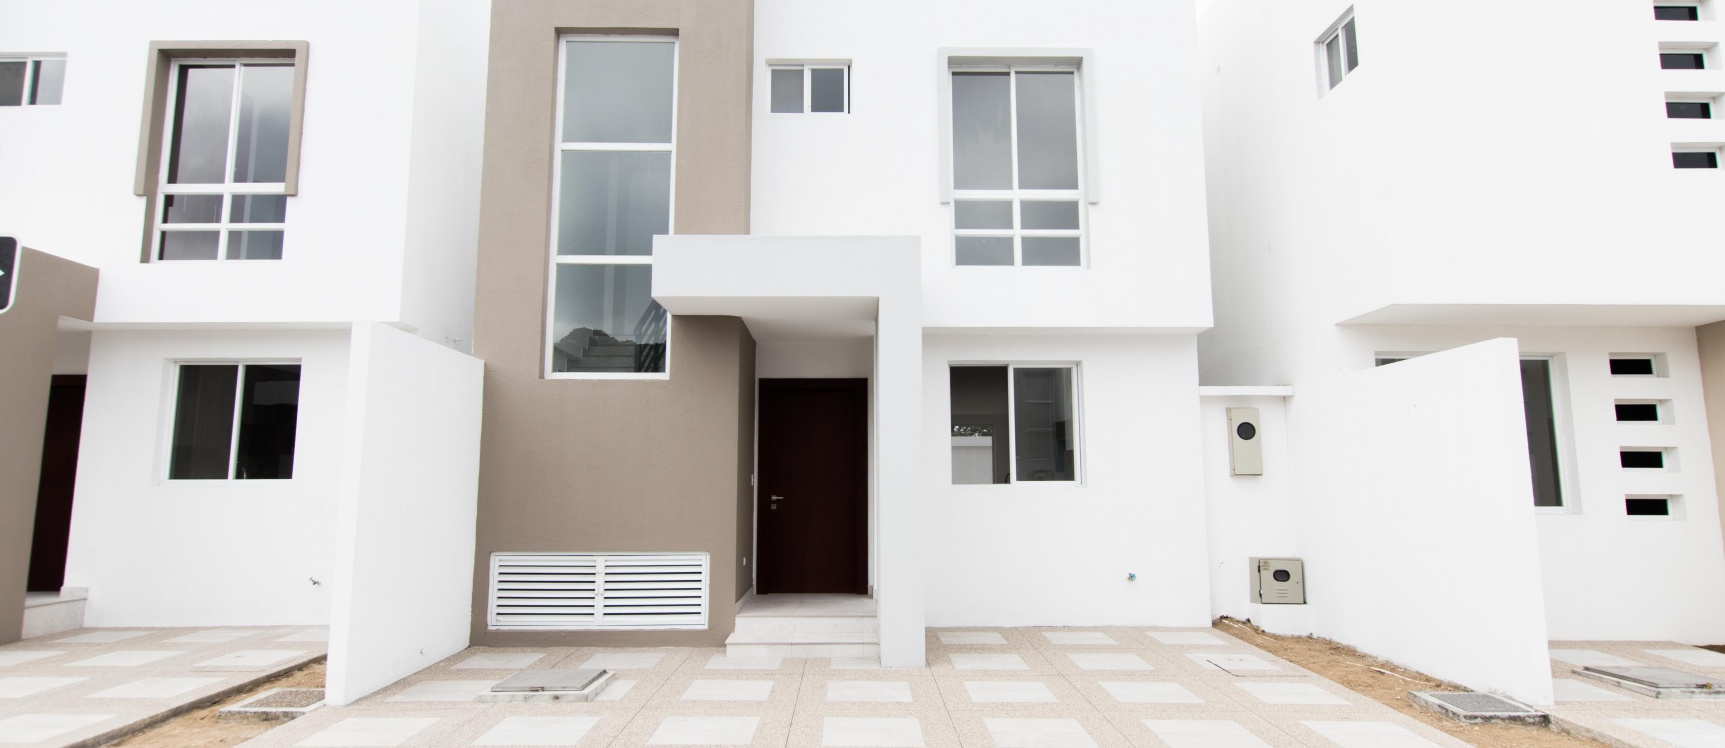 GeoBienes - Casa en venta ubicada en la Urbanización Puerto Azul - Plusvalia Guayaquil Casas de venta y alquiler Inmobiliaria Ecuador